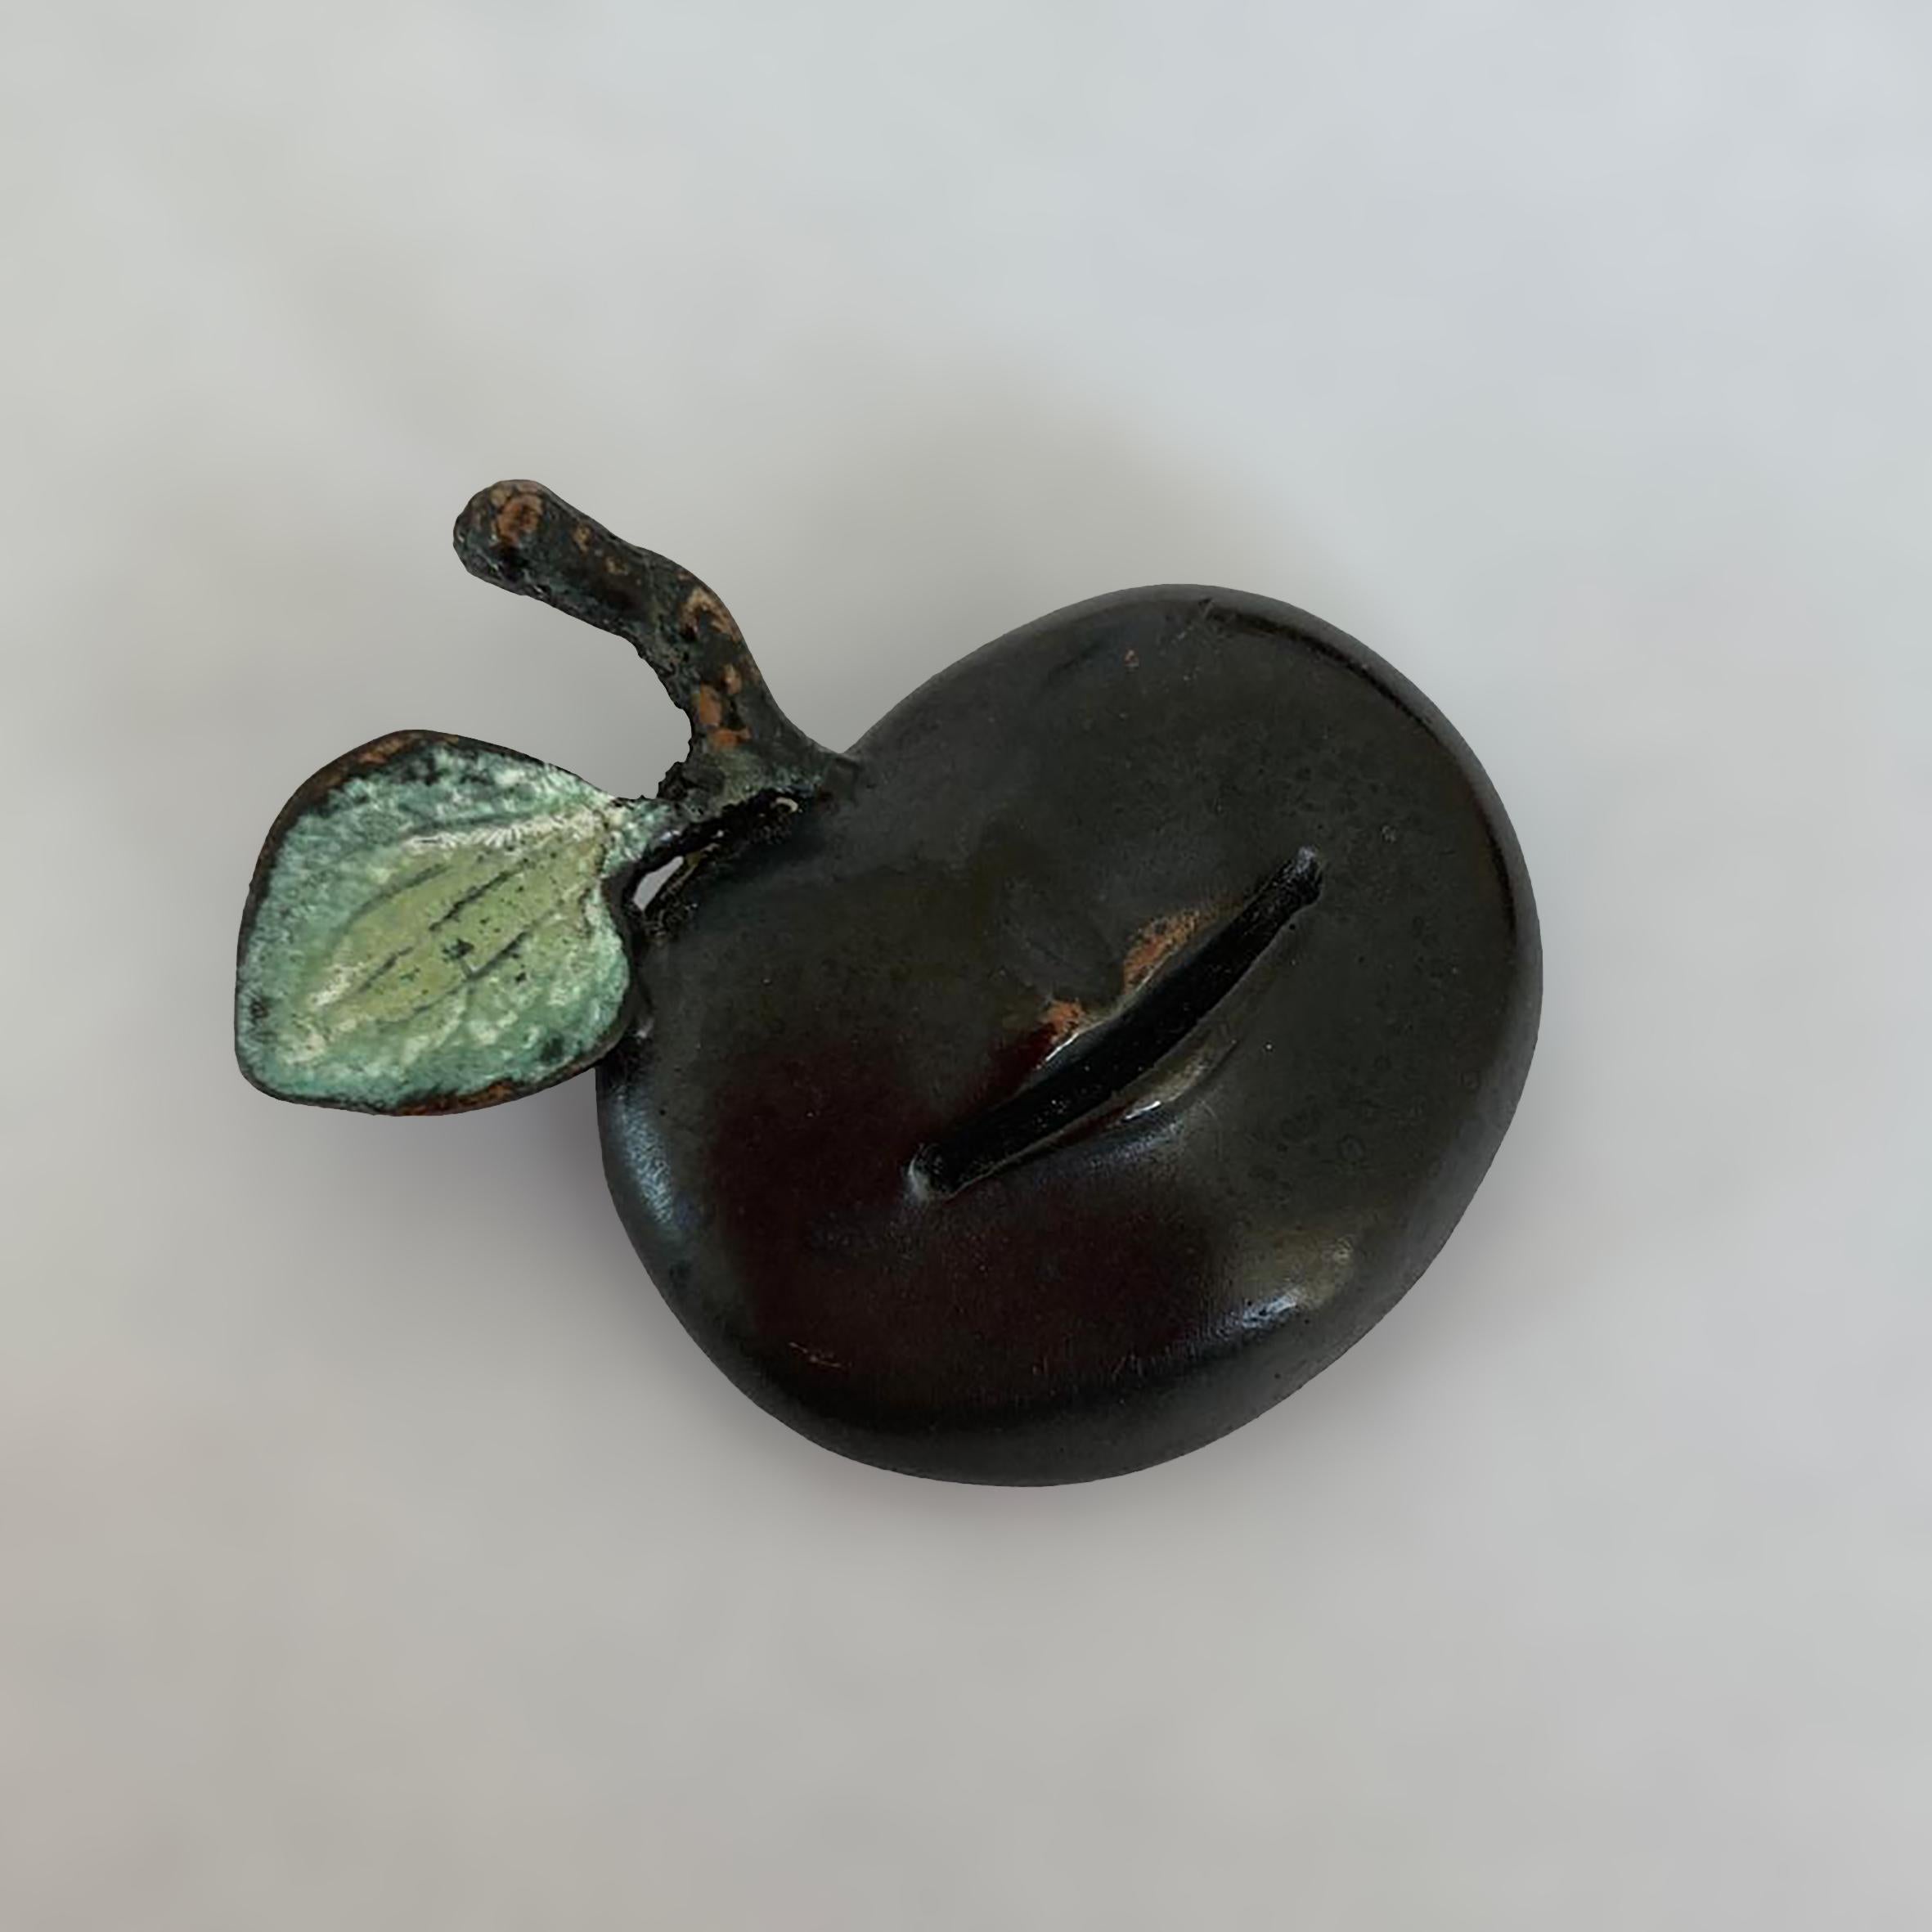 Claude Lalanne (1924-2019)

Pomme Bouche

Broche en bronze patiné représentant une pomme avec une bouche humaine surmontée d'une feuille verte patinée à côté de la queue de la pomme.
Monogramme 